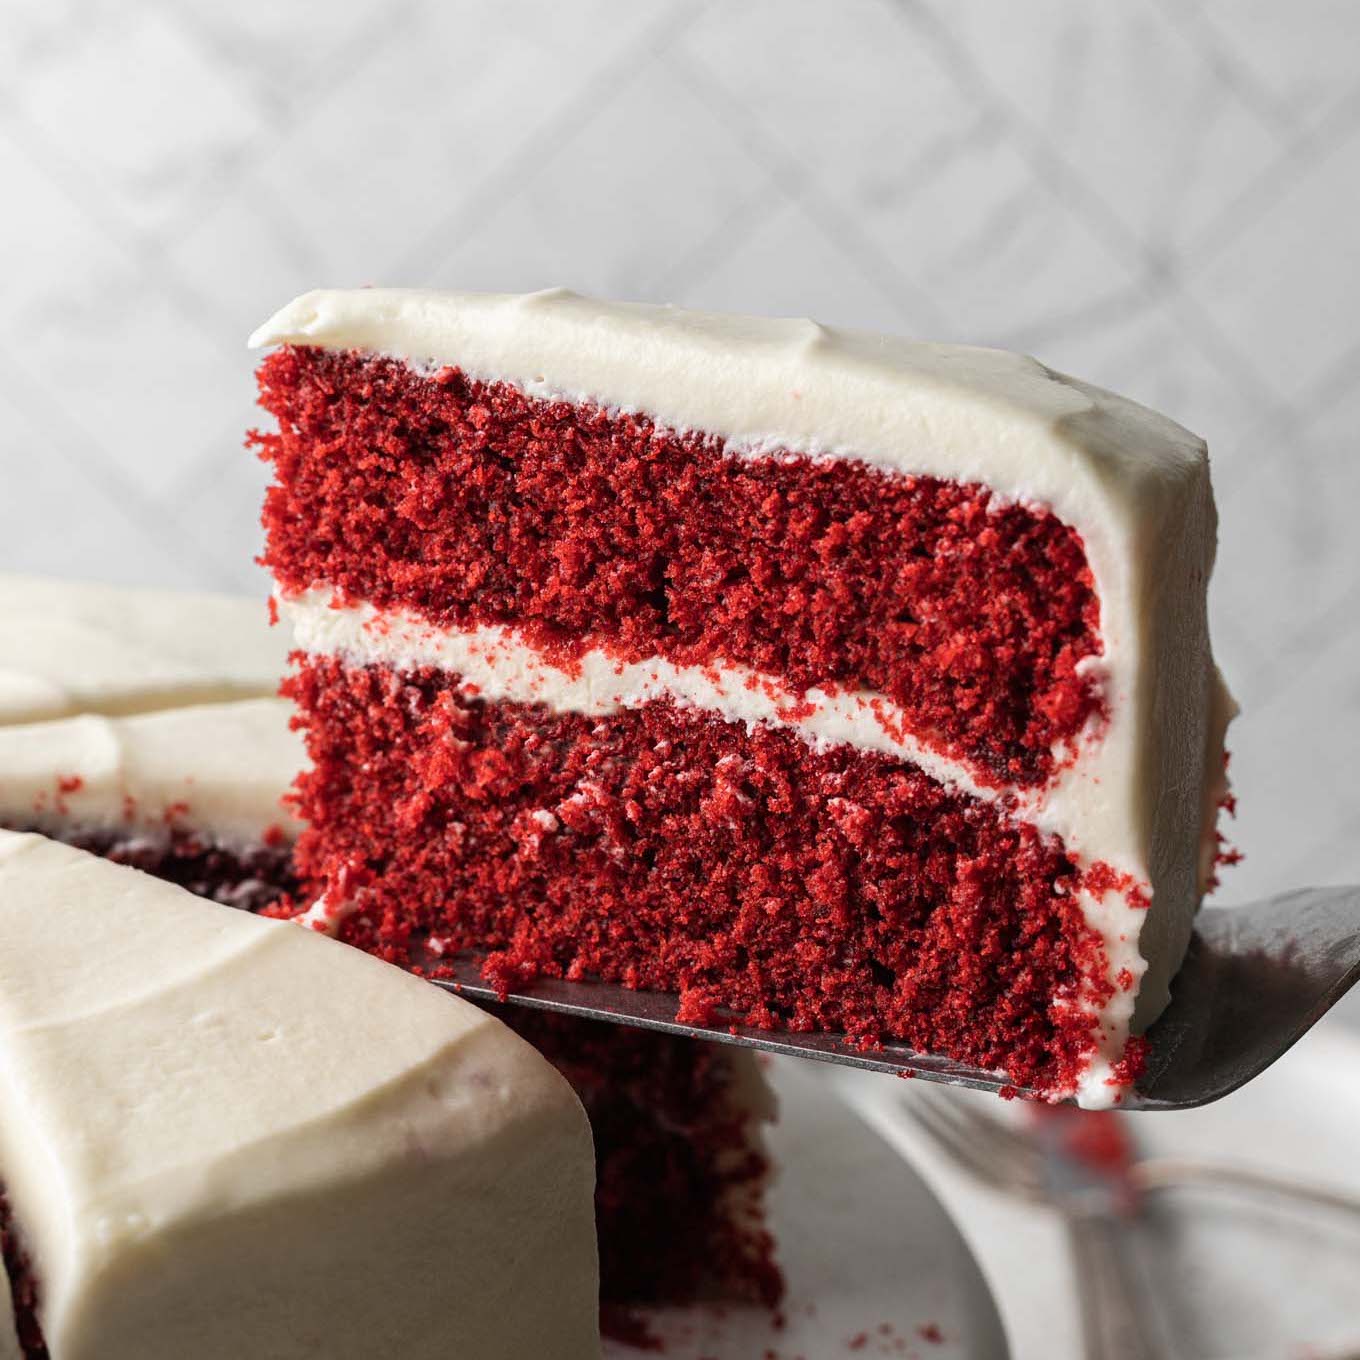 The BEST Red Cake Well Bake Often